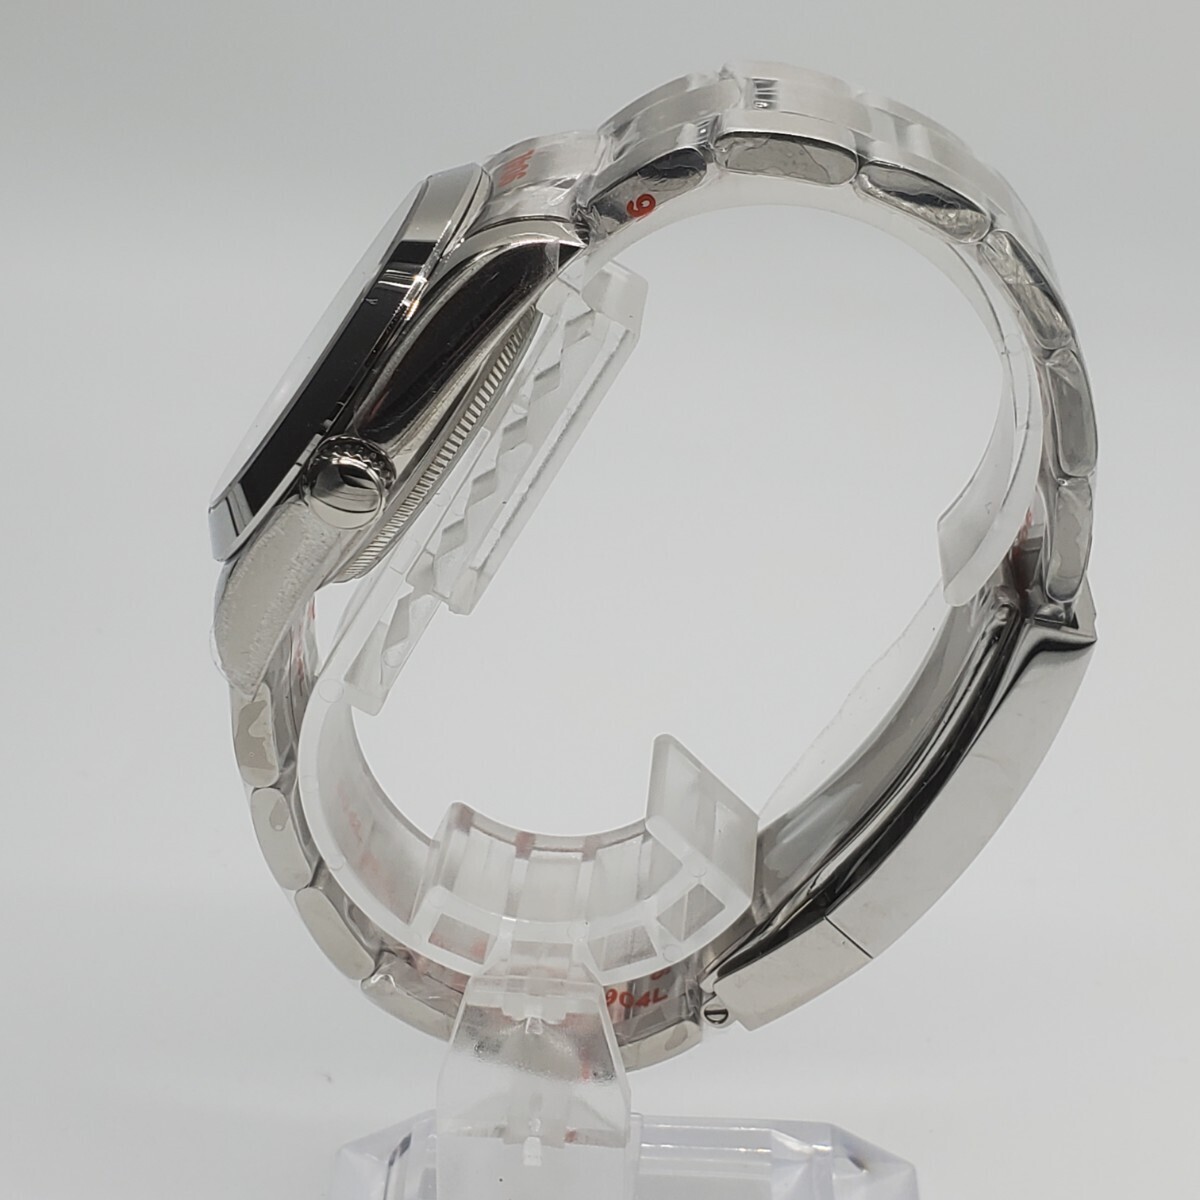 新品 自動巻 LARIMOKER ノーロゴ ブルー文字盤 36mm セイコー NH35 メンズ腕時計 機械式 サファイア風防 シースルーバック仕様_画像3